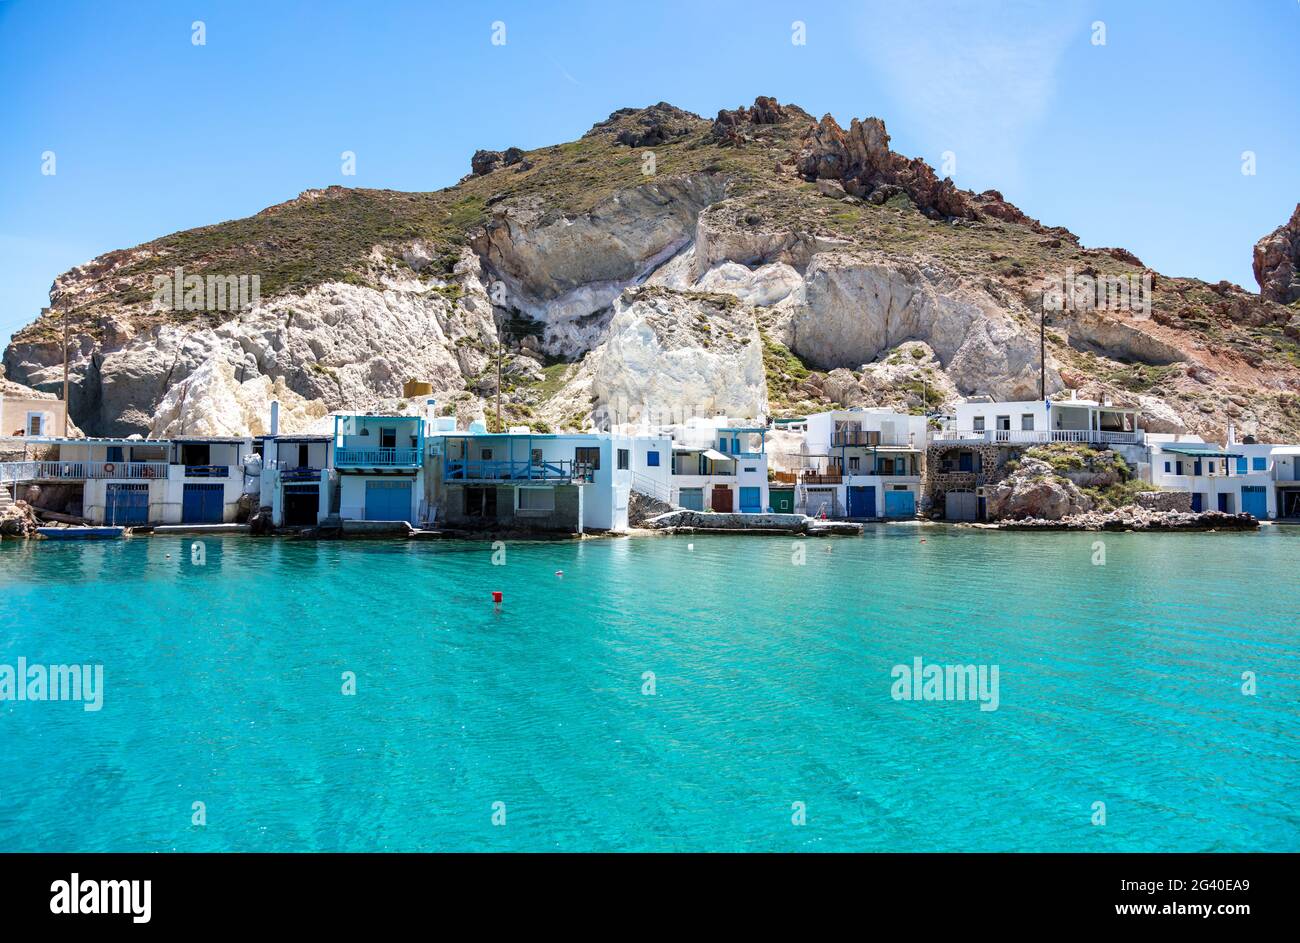 Isola di Milos, Cicladi Grecia. Firoporamos o Fyropotamos villaggio di pescatori, Cicladi architettura tradizionale case di pescatori e mare turchese chiaro Foto Stock